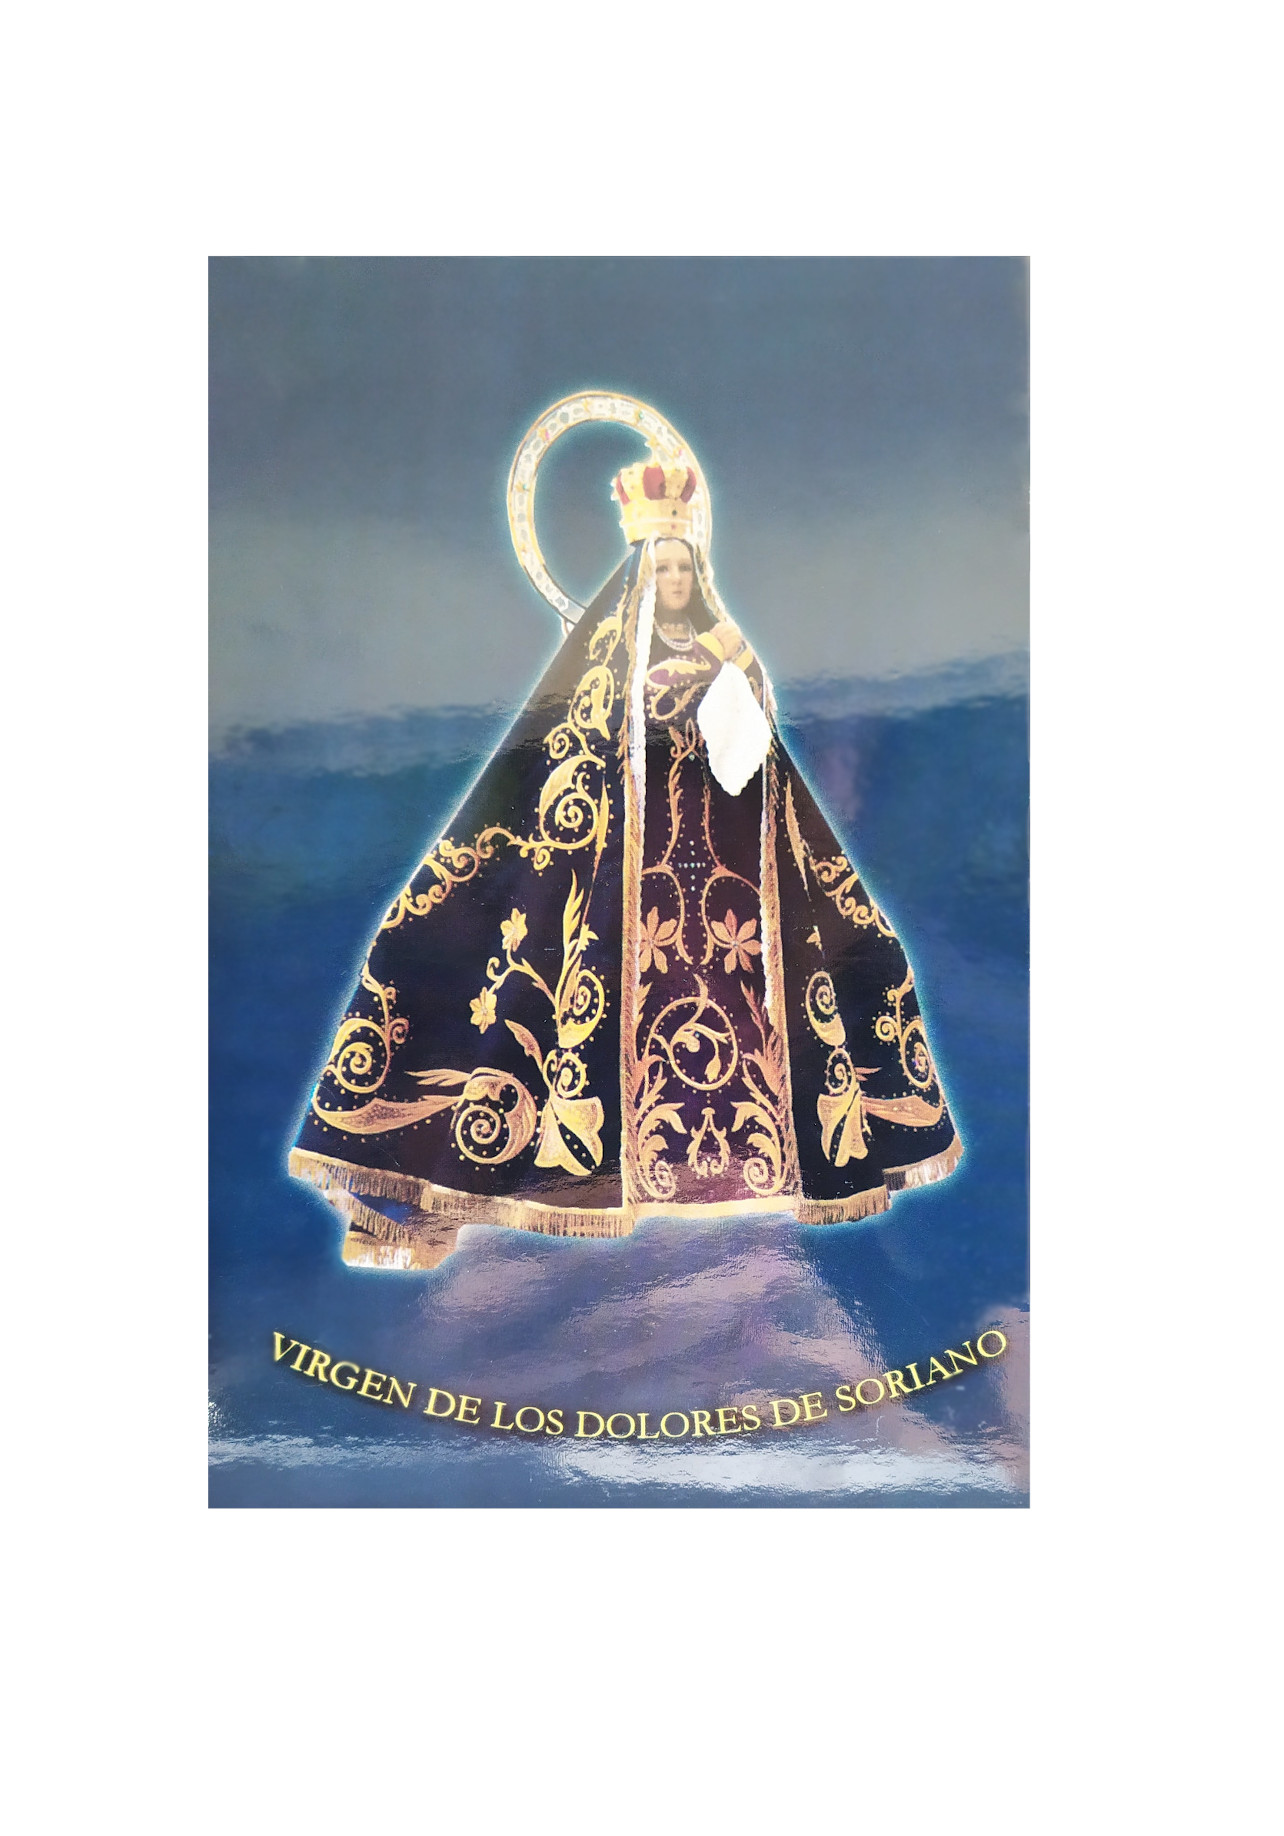 Virgen de los Dolores de Soariano